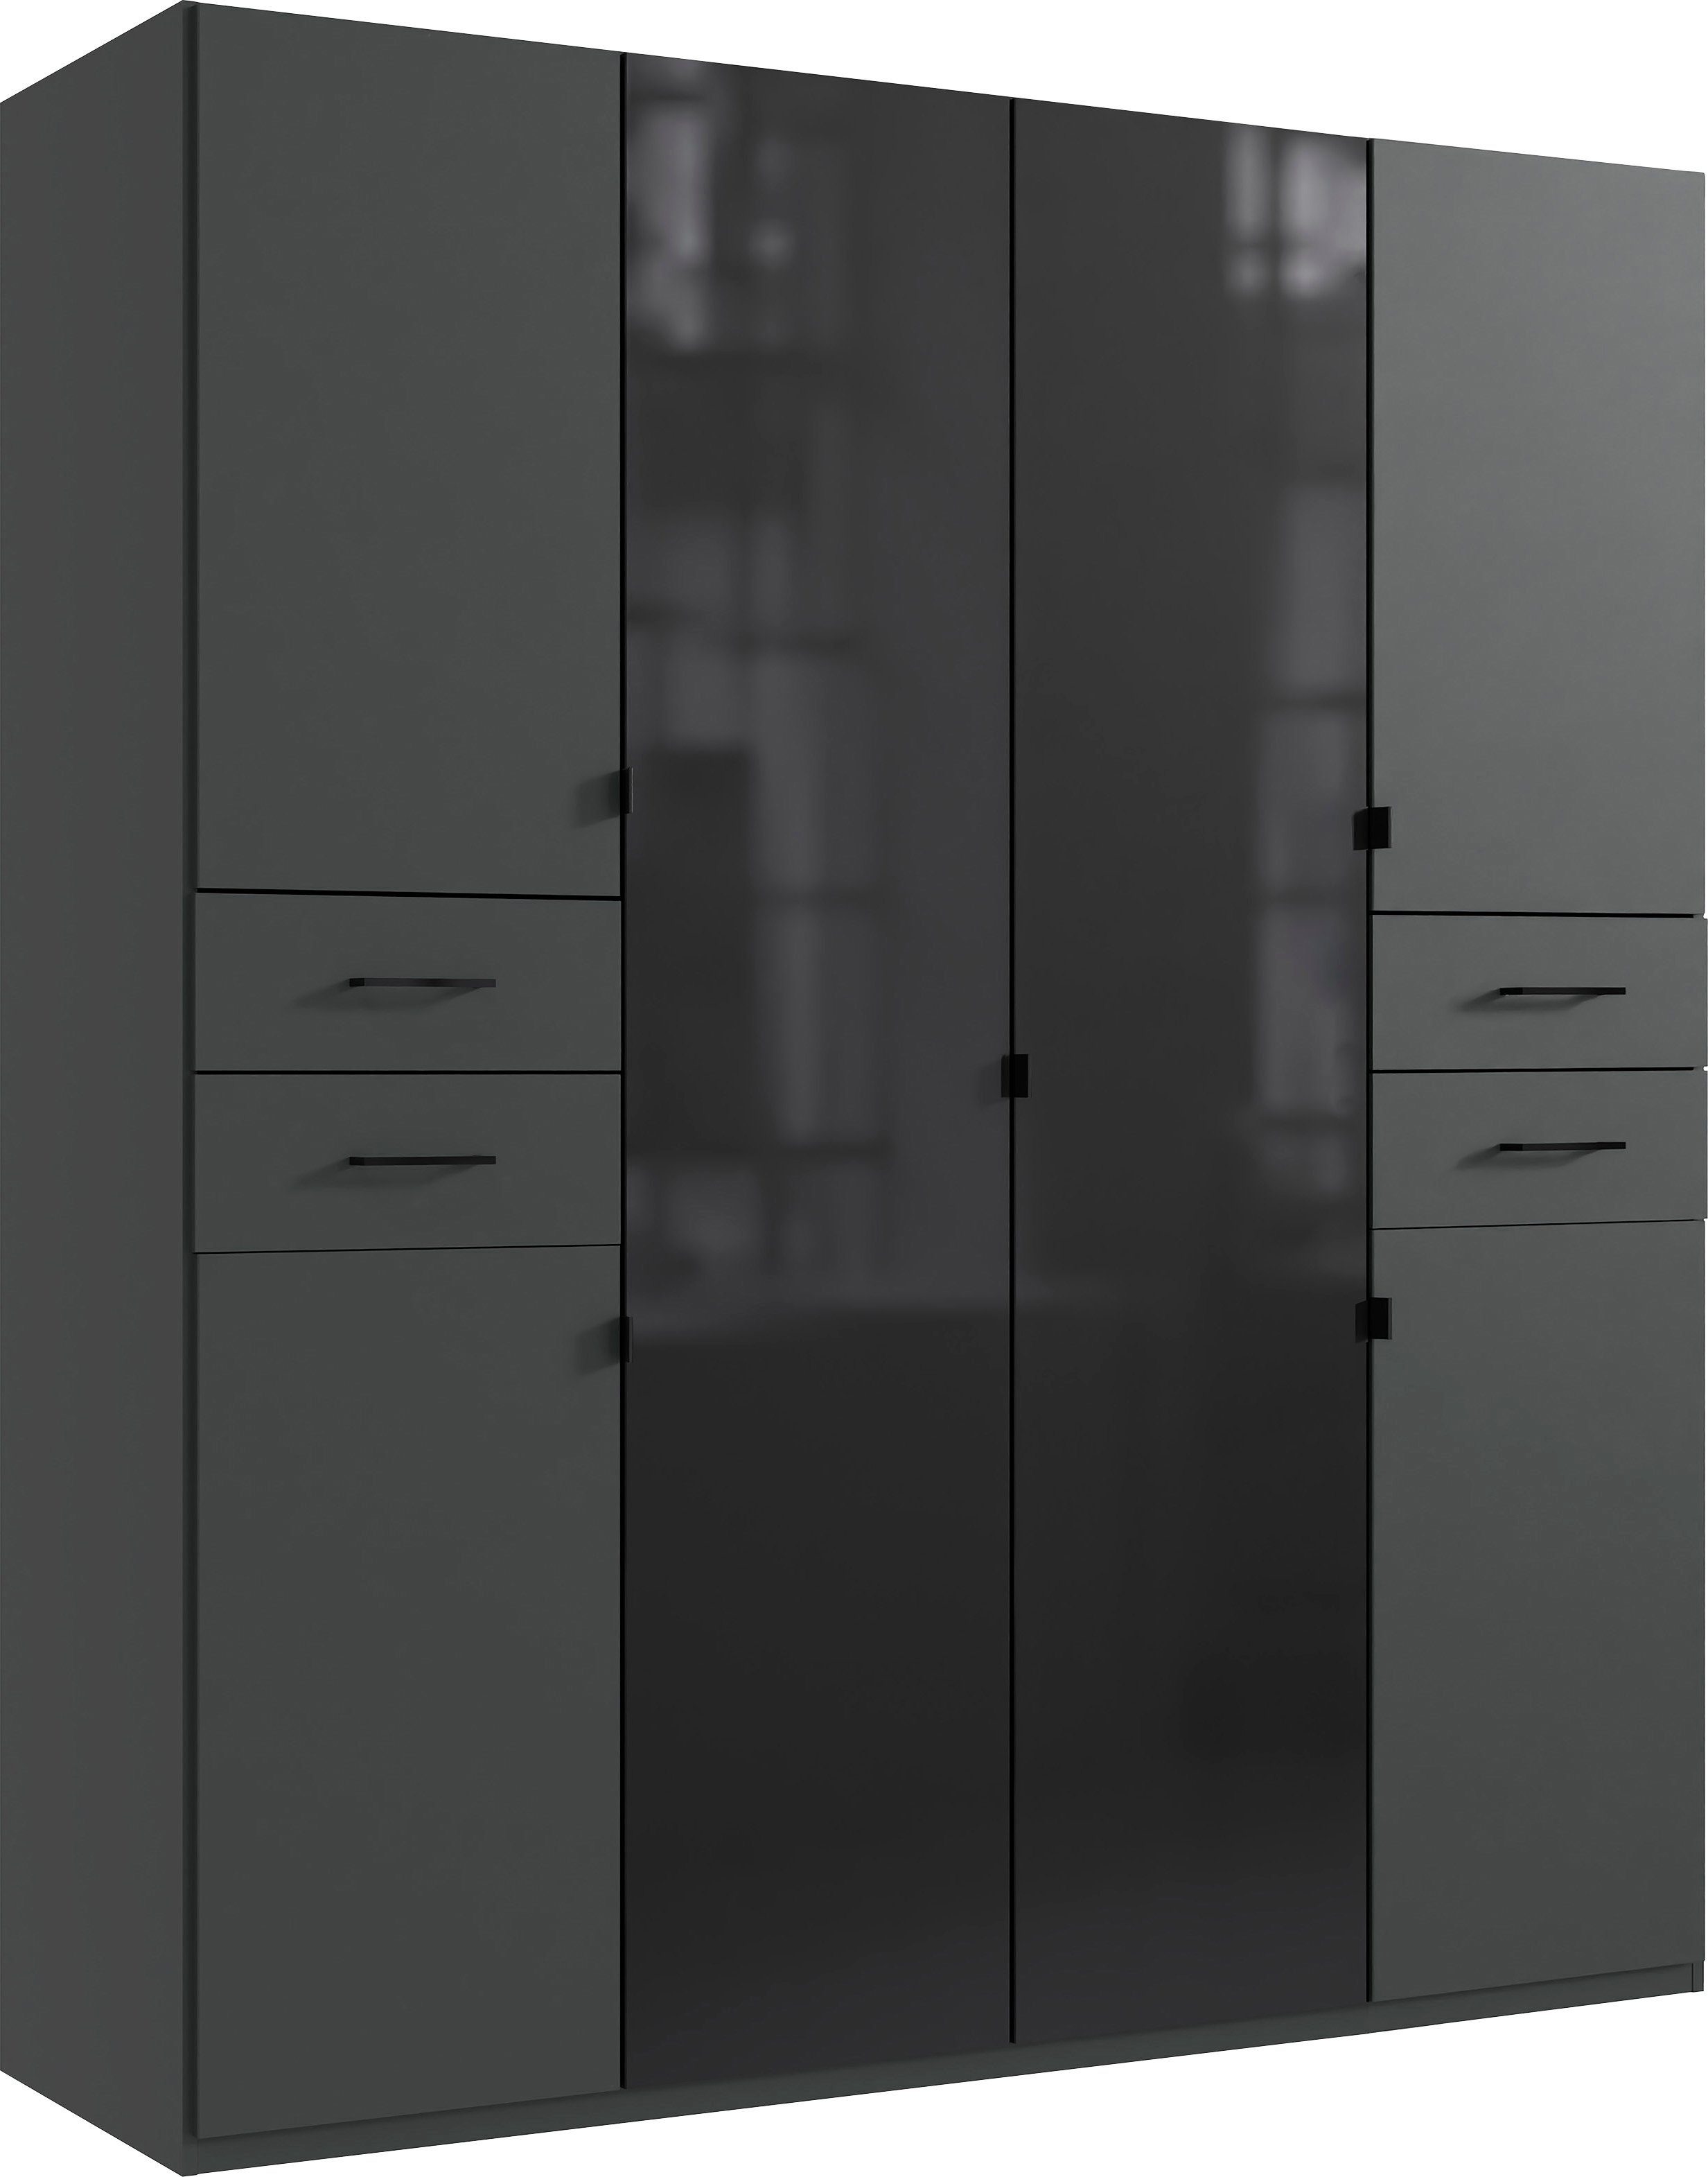 Wimex Drehtürenschrank Danzig mit Schubladen auf bequemer Höhe, mit Glastüren Graphit/ lange durchgängige Türfronten Glas schwarz